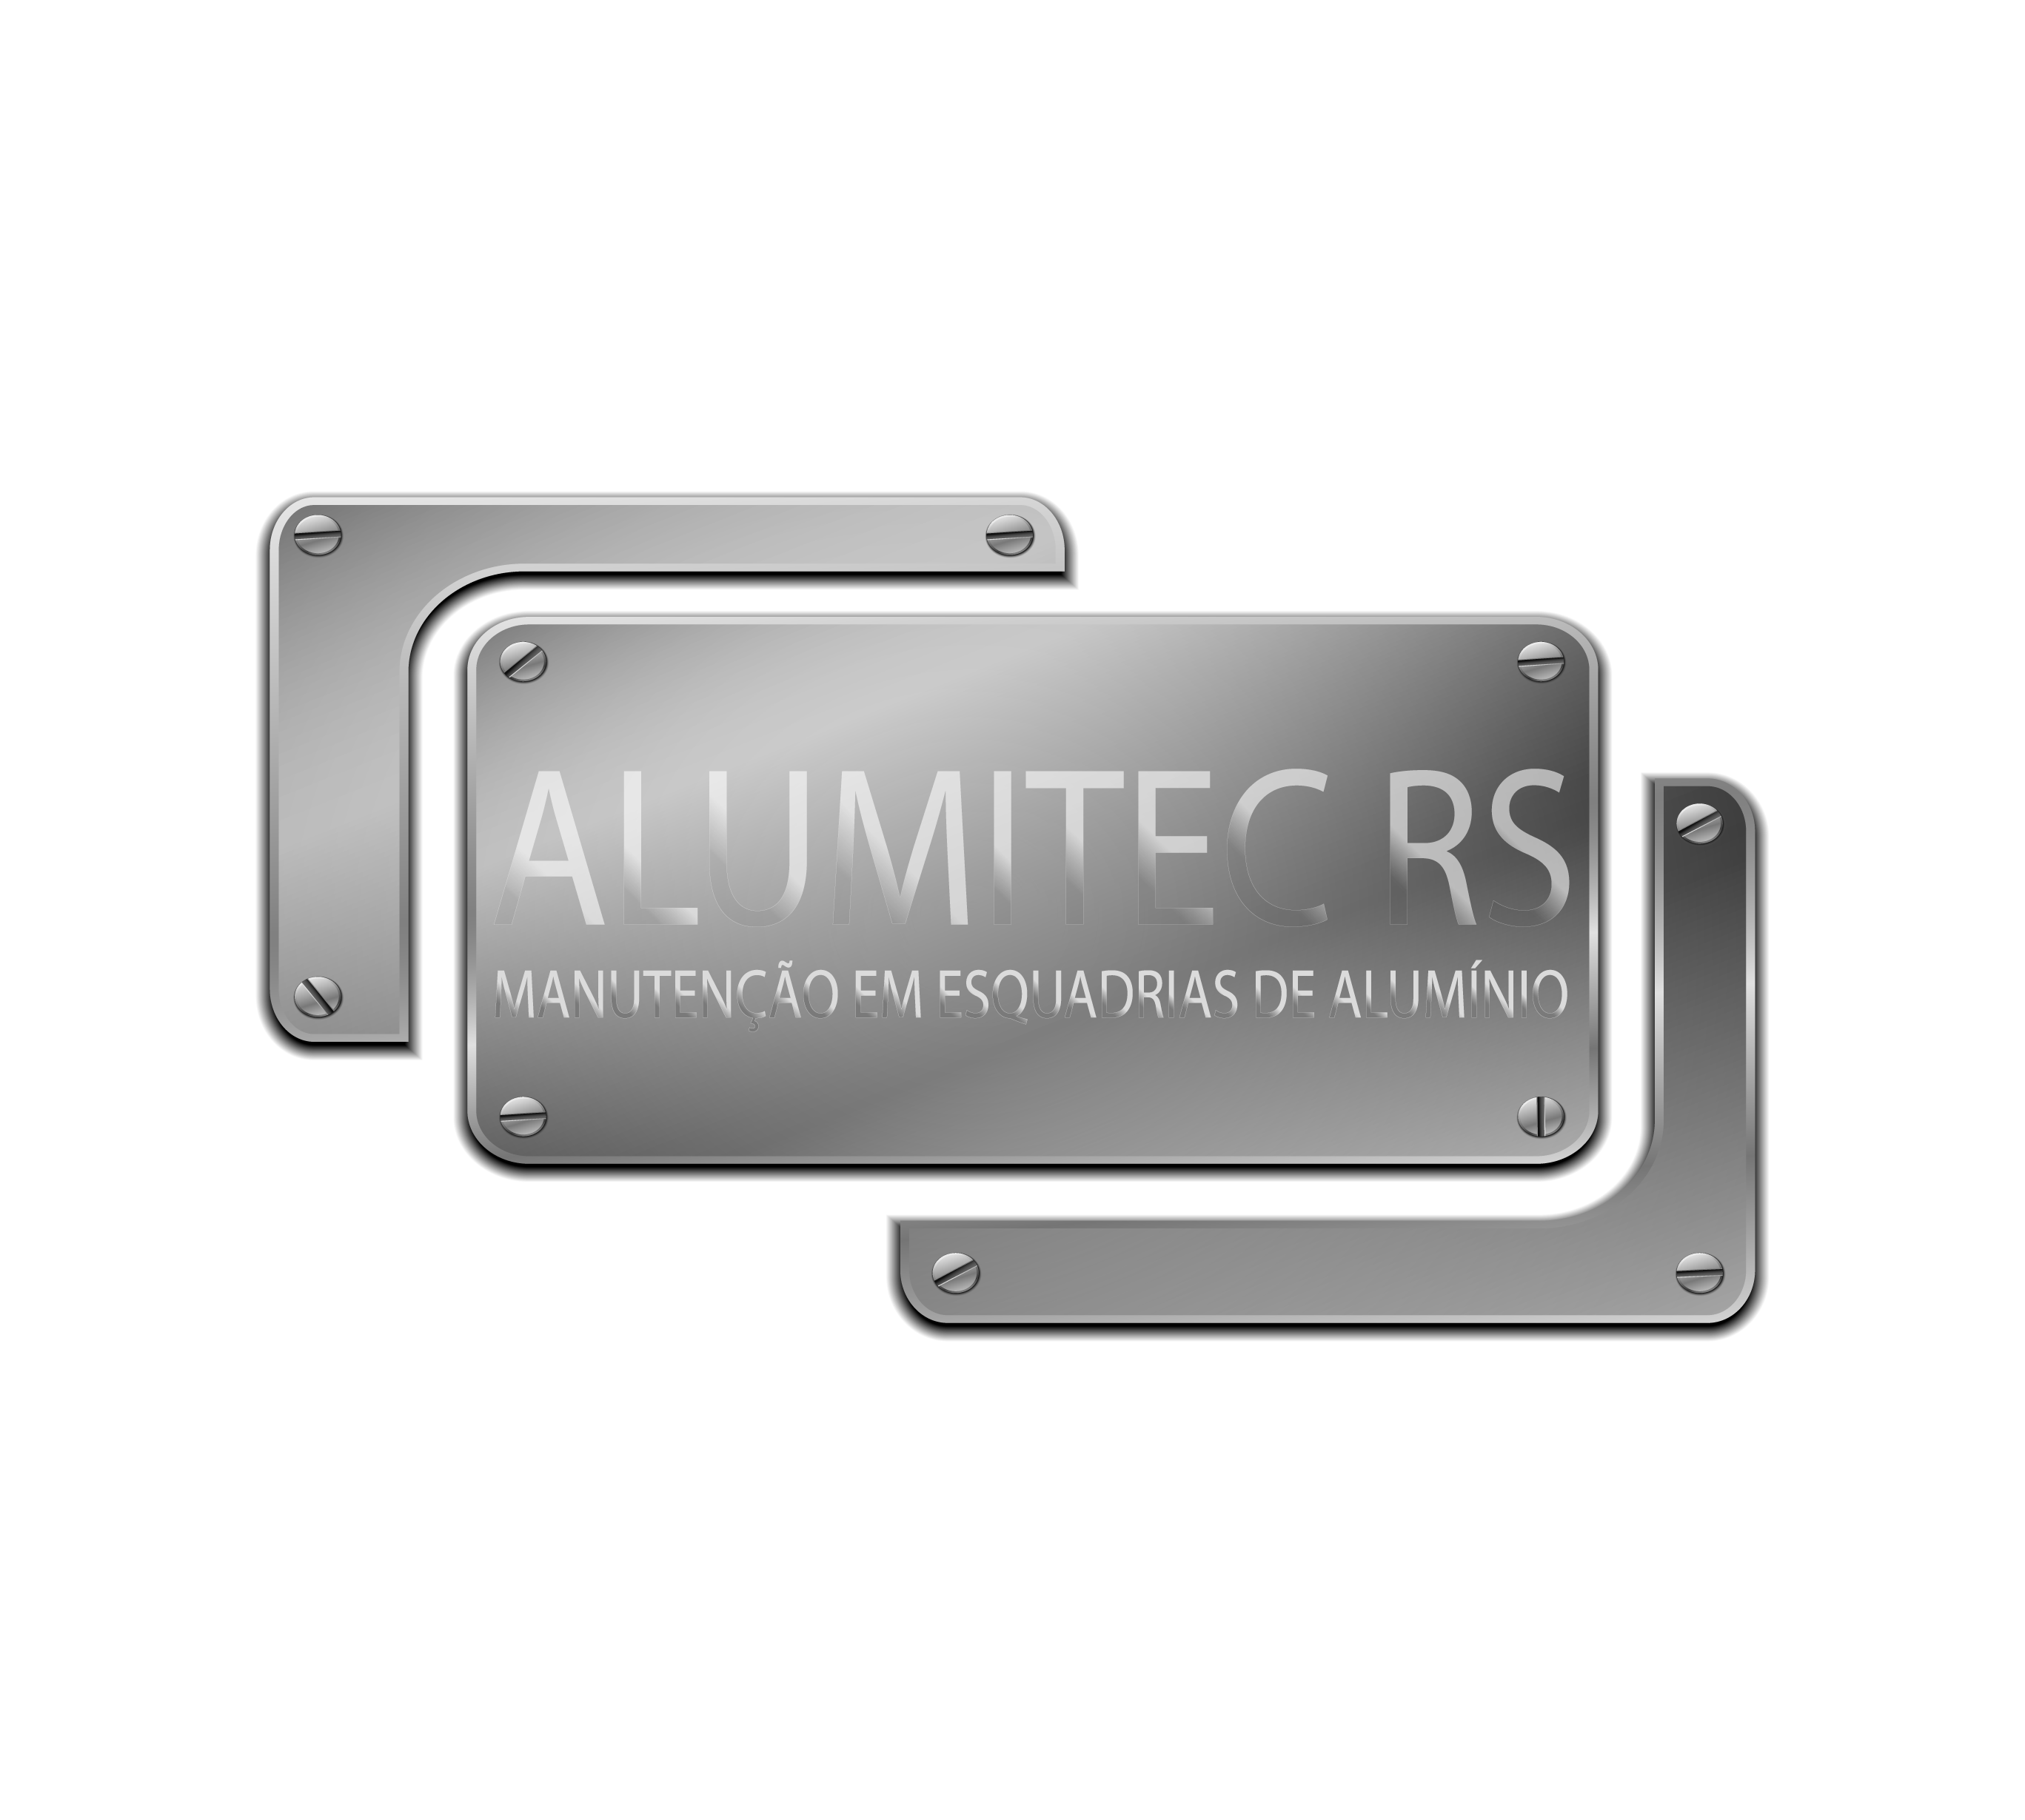 Alumitec RS logo